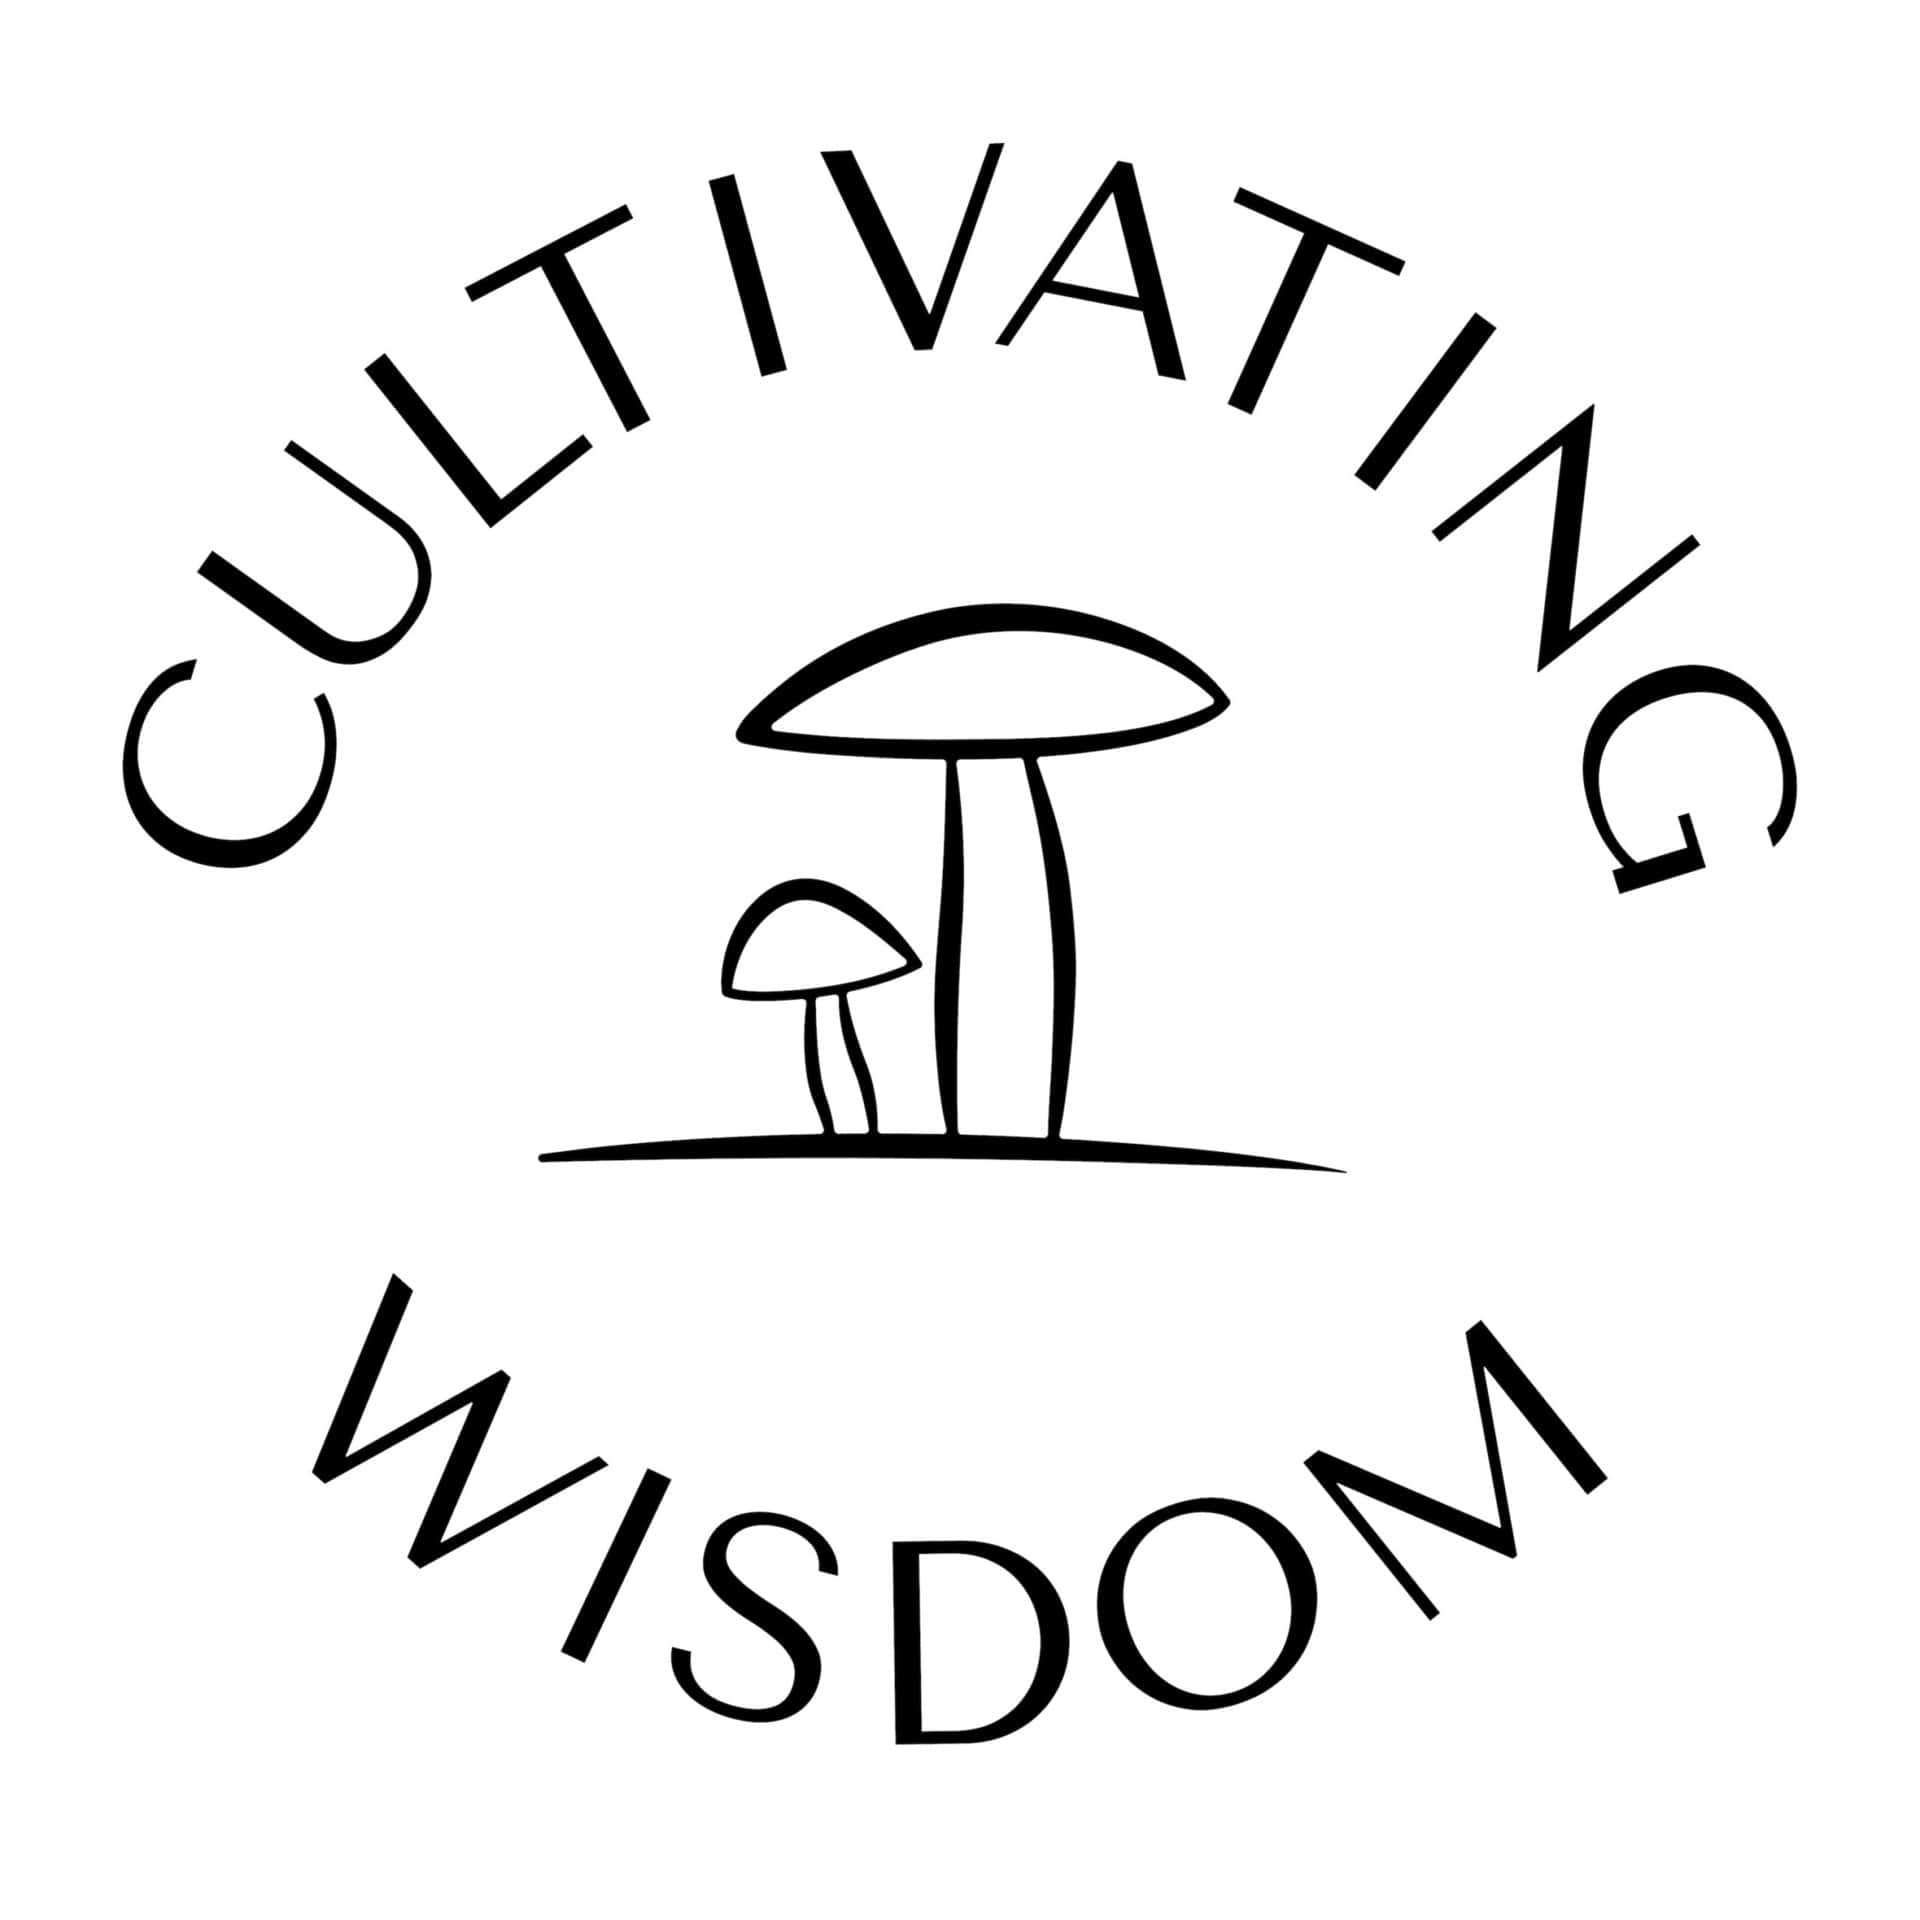 MorningStar Partner - Cultivating Wisdom